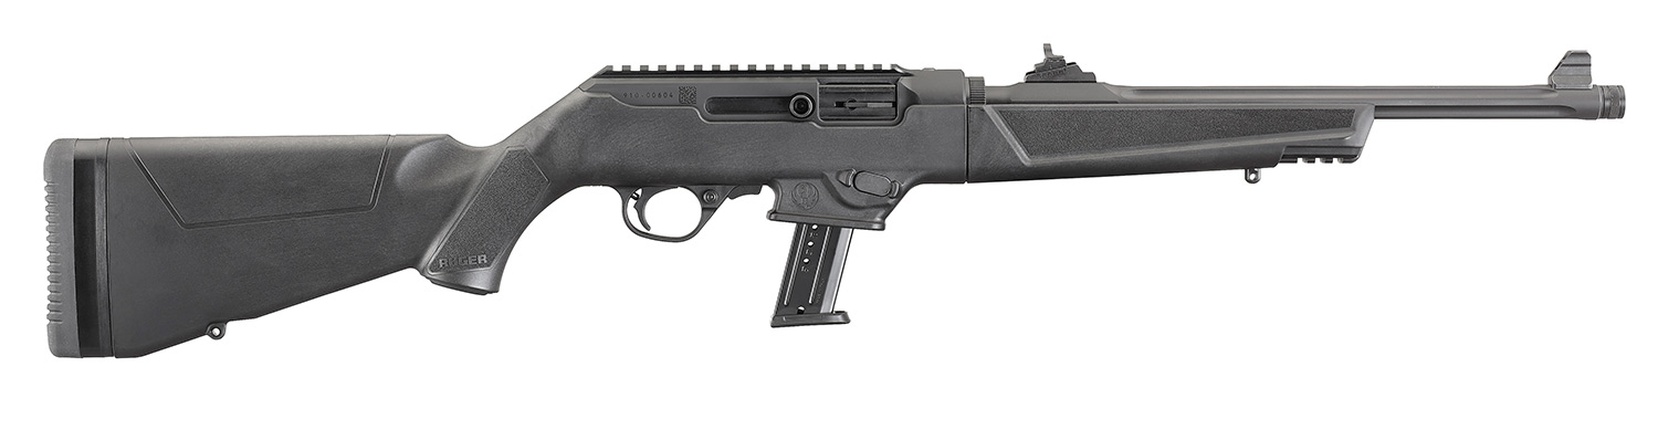 Don shot - Ruger PC Carbine